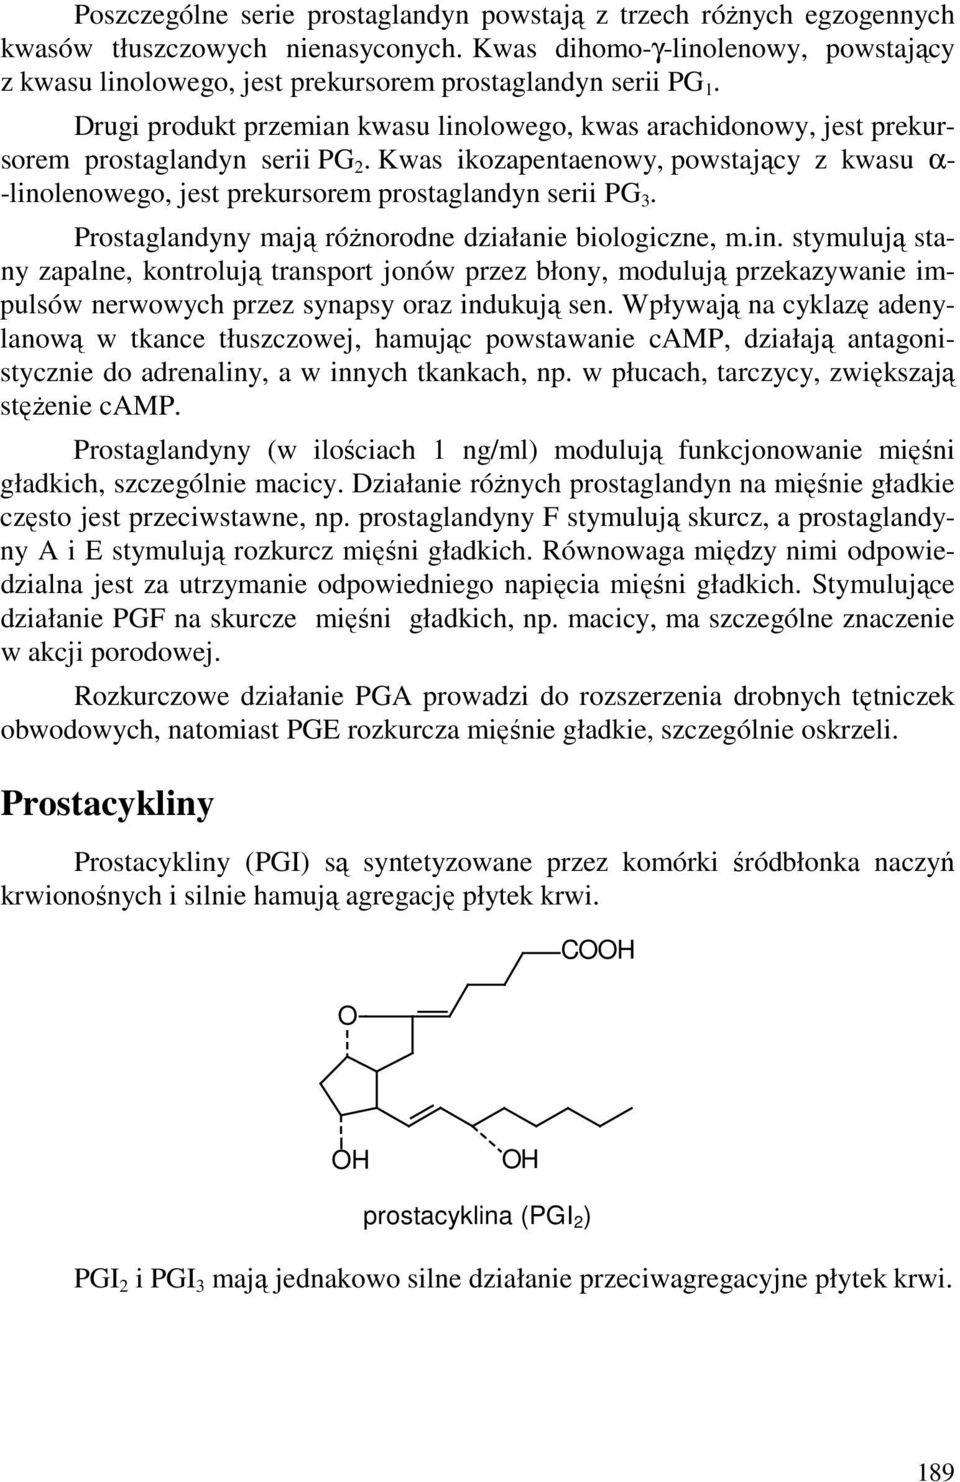 Drugi produkt przemian kwasu linolowego, kwas arachidonowy, jest prekursorem prostaglandyn serii PG 2.